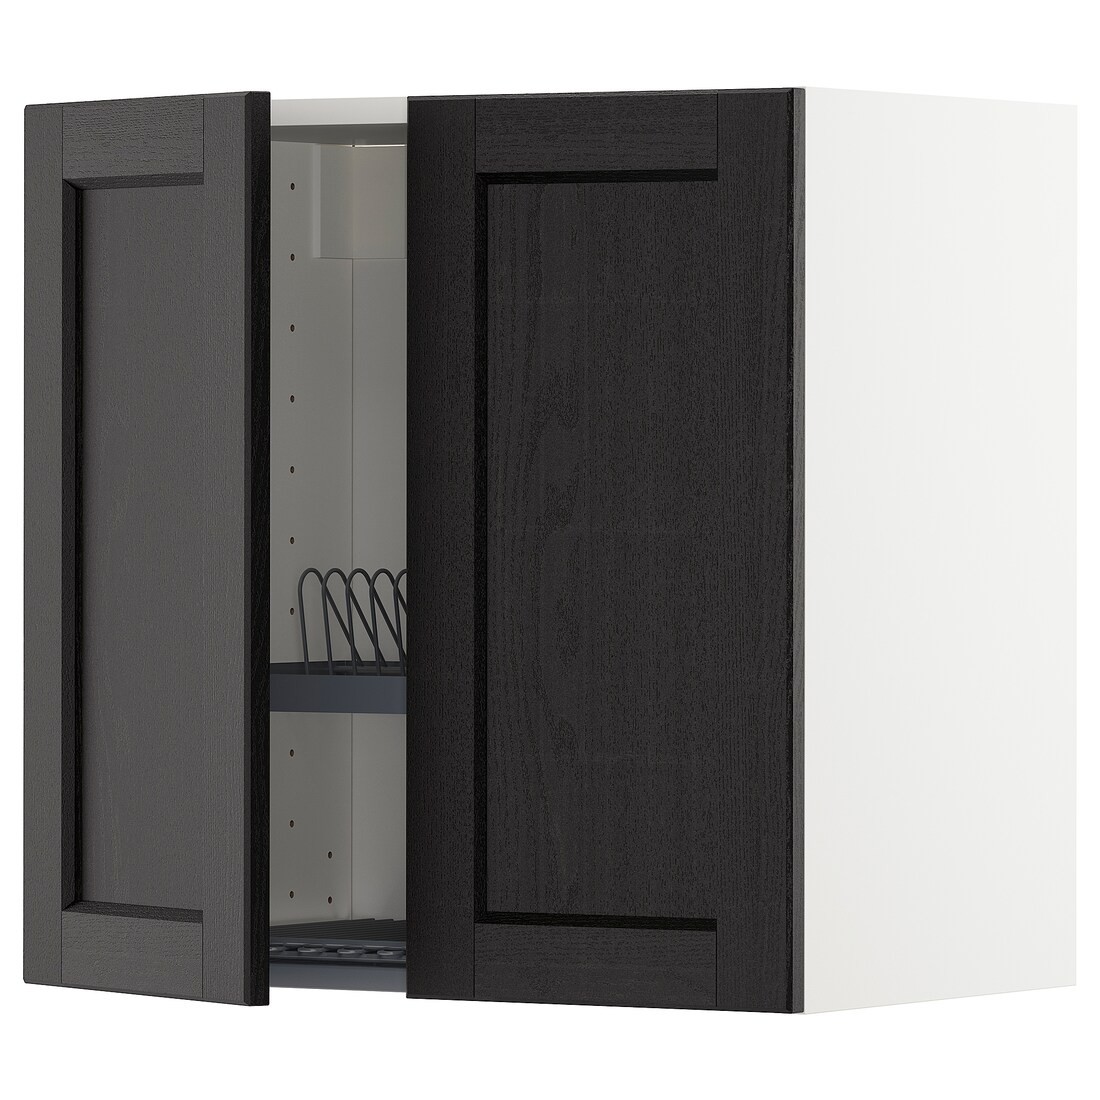 IKEA METOD МЕТОД Навесной шкаф с посудной сушилкой / 2 дверцы, белый / Lerhyttan черная морилка, 60x60 см 49454264 | 494.542.64